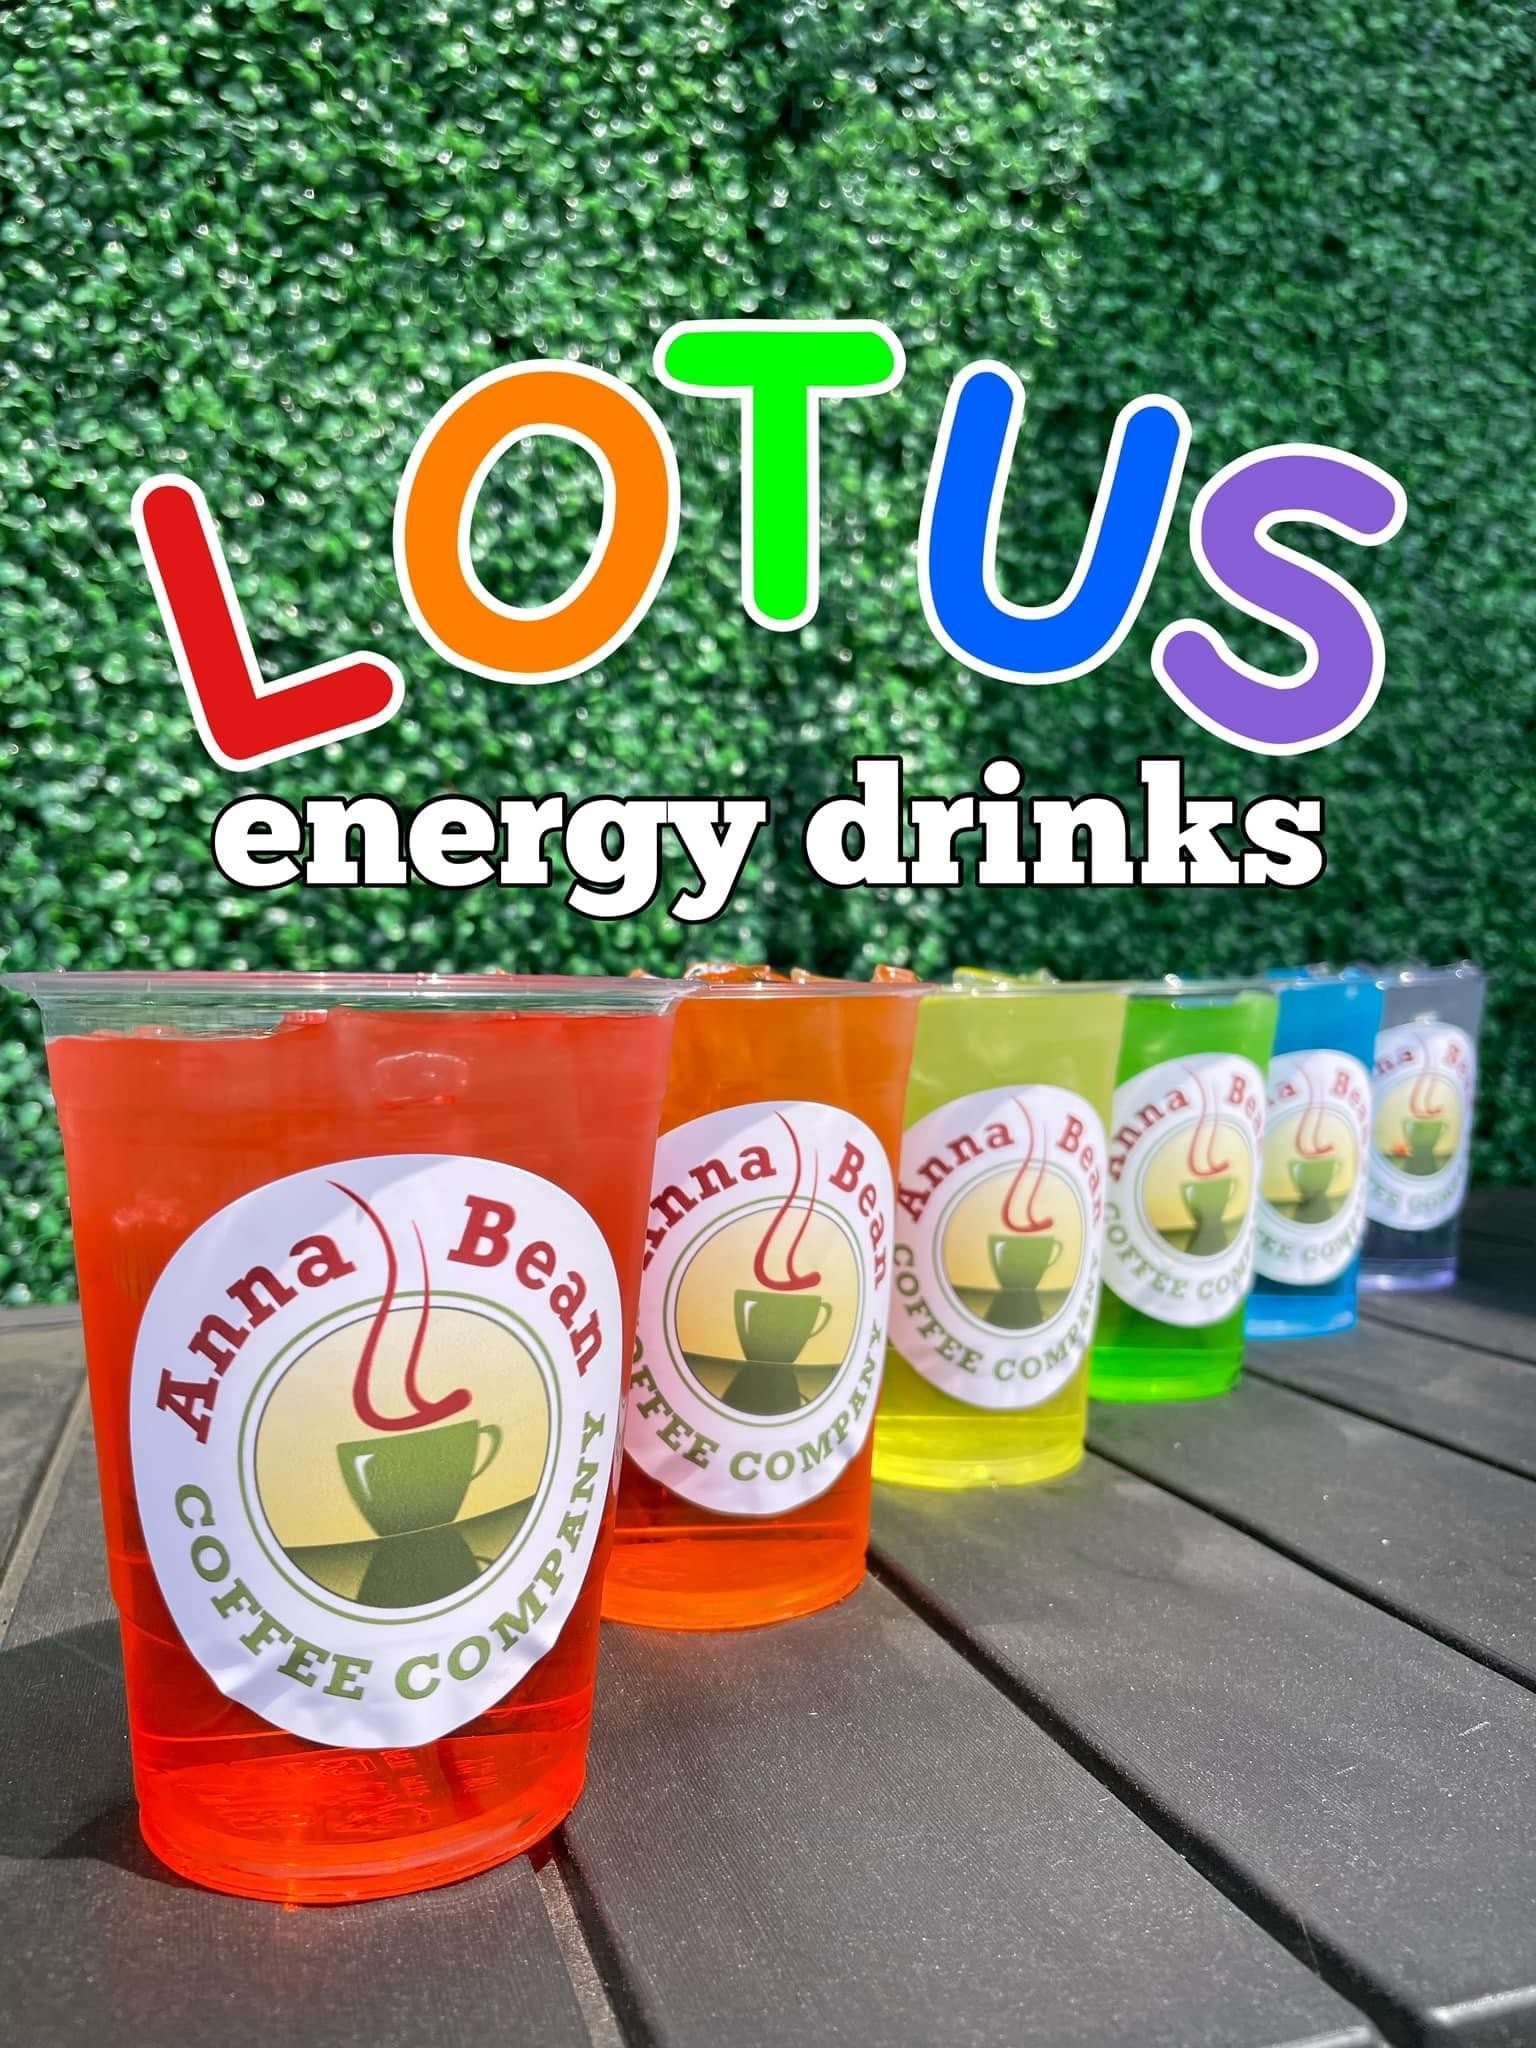 Lotus Energy Drink